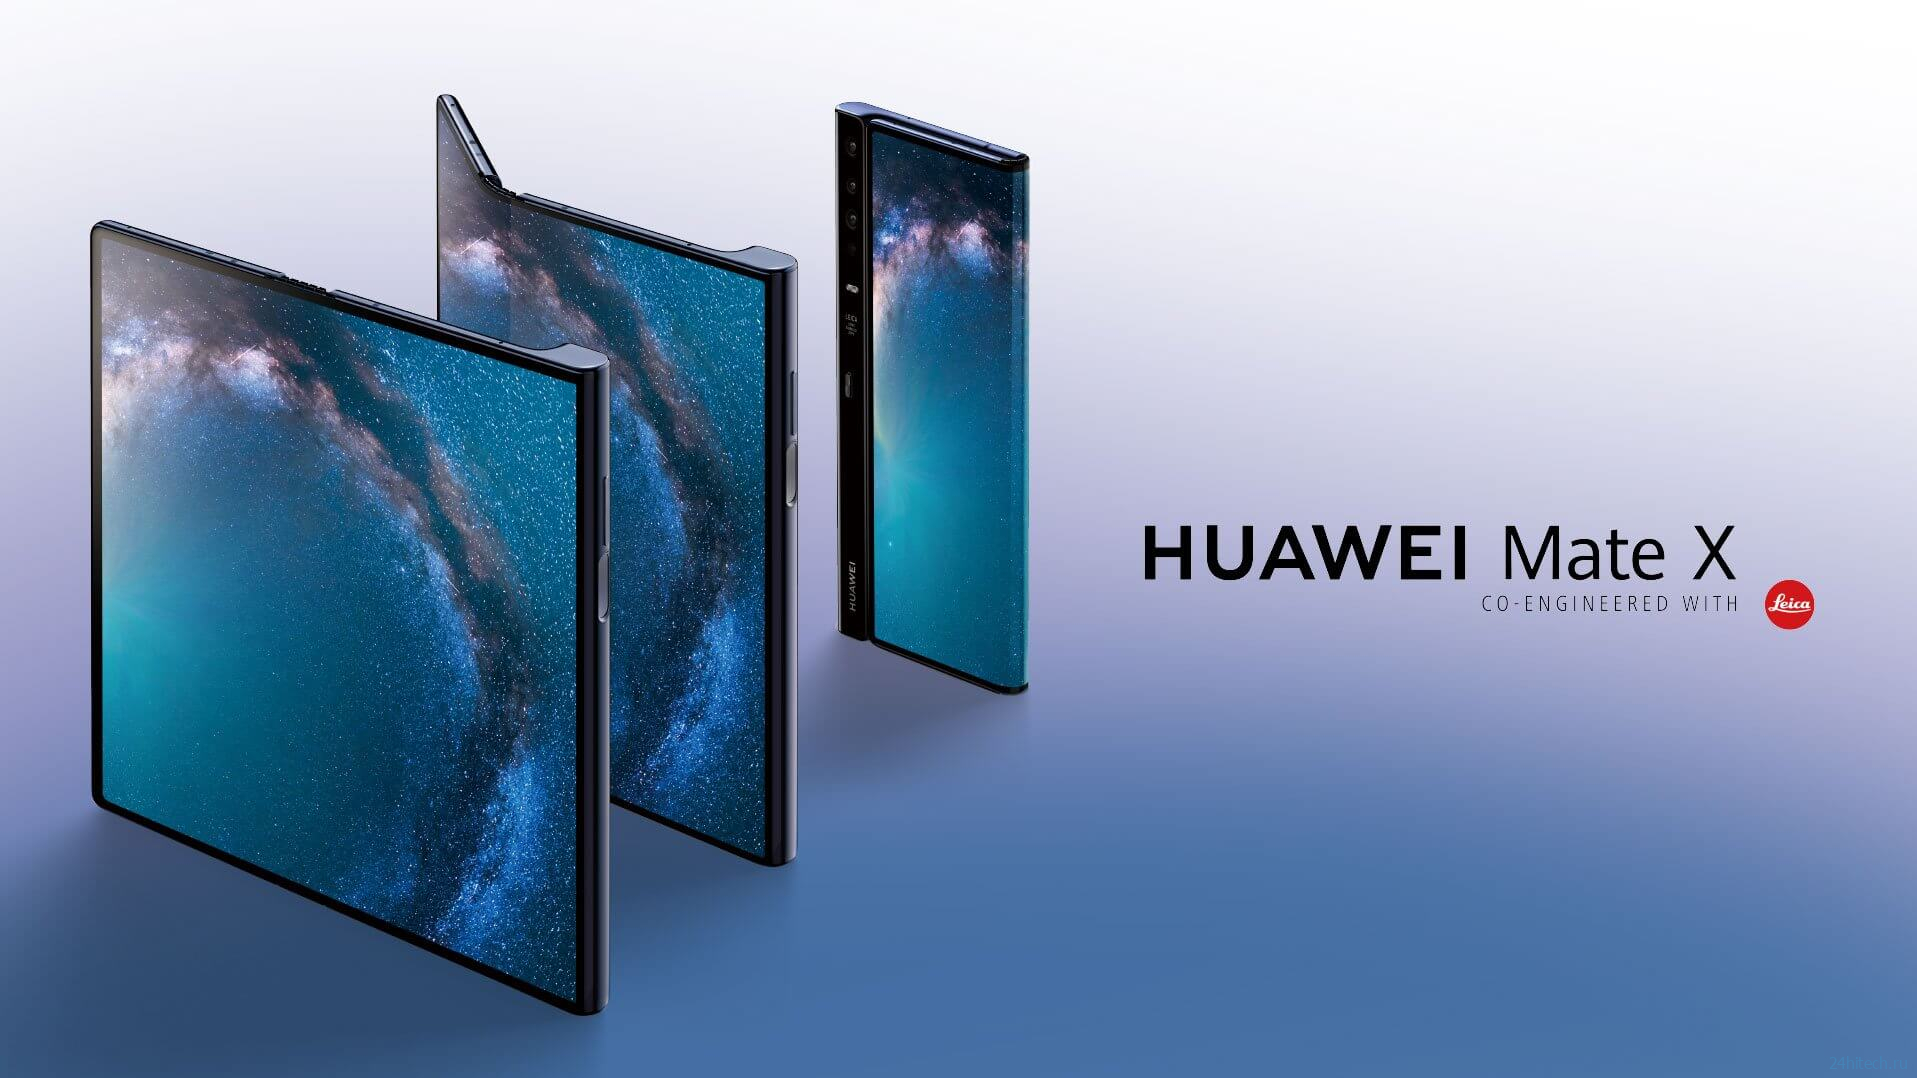 Huawei выпустит новый складной смартфон в конце февраля. Тут что-то не так